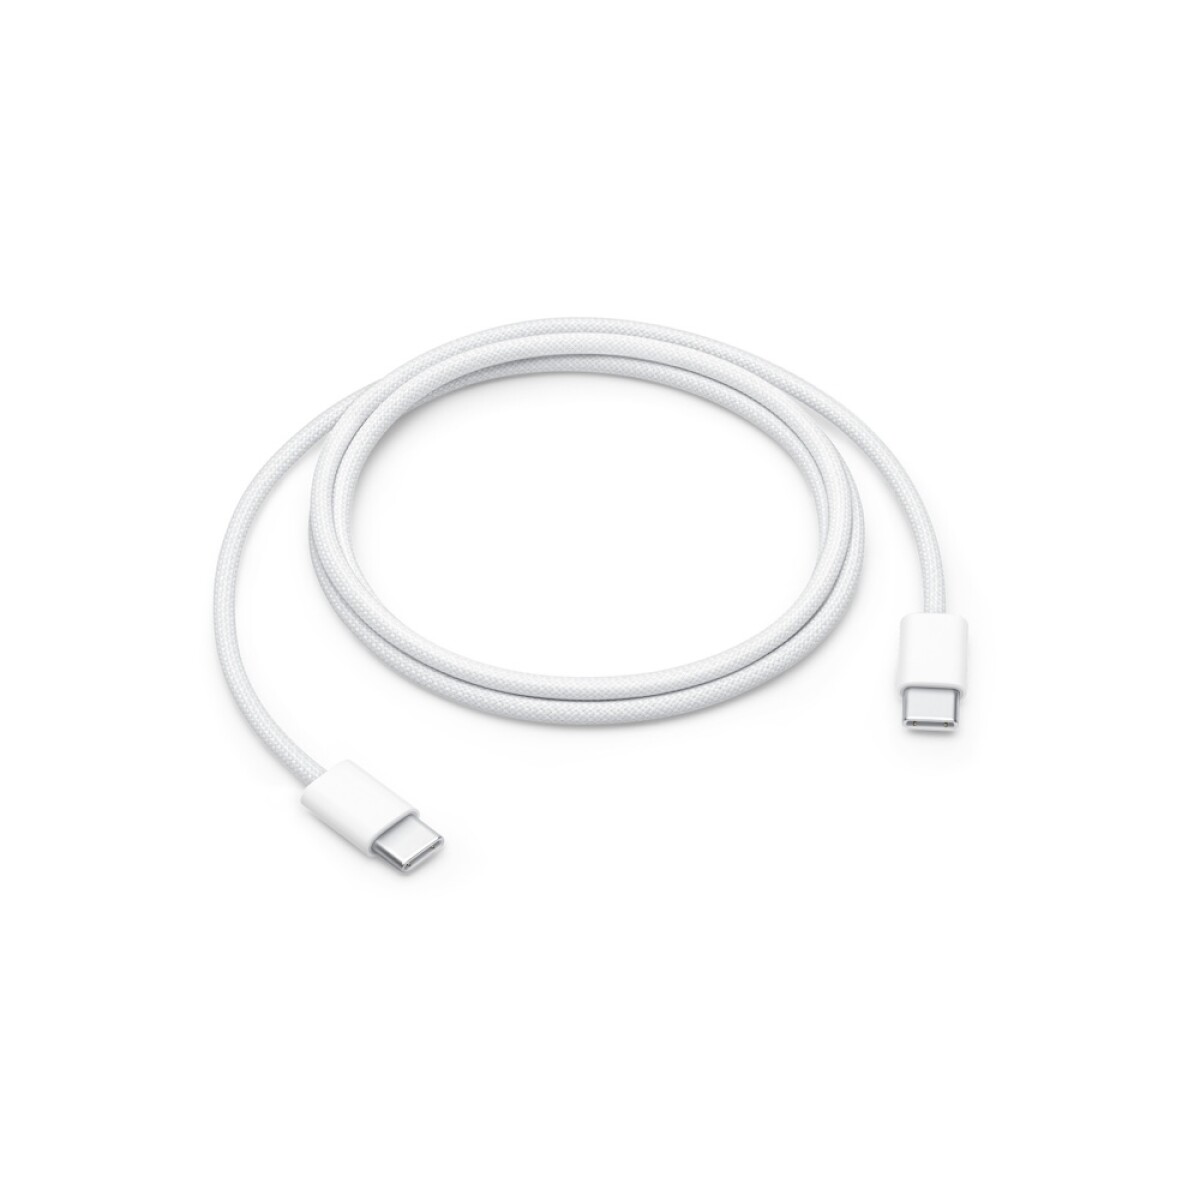 Cable de carga Apple USB-C 1m hasta 60W Reforzado en tela 